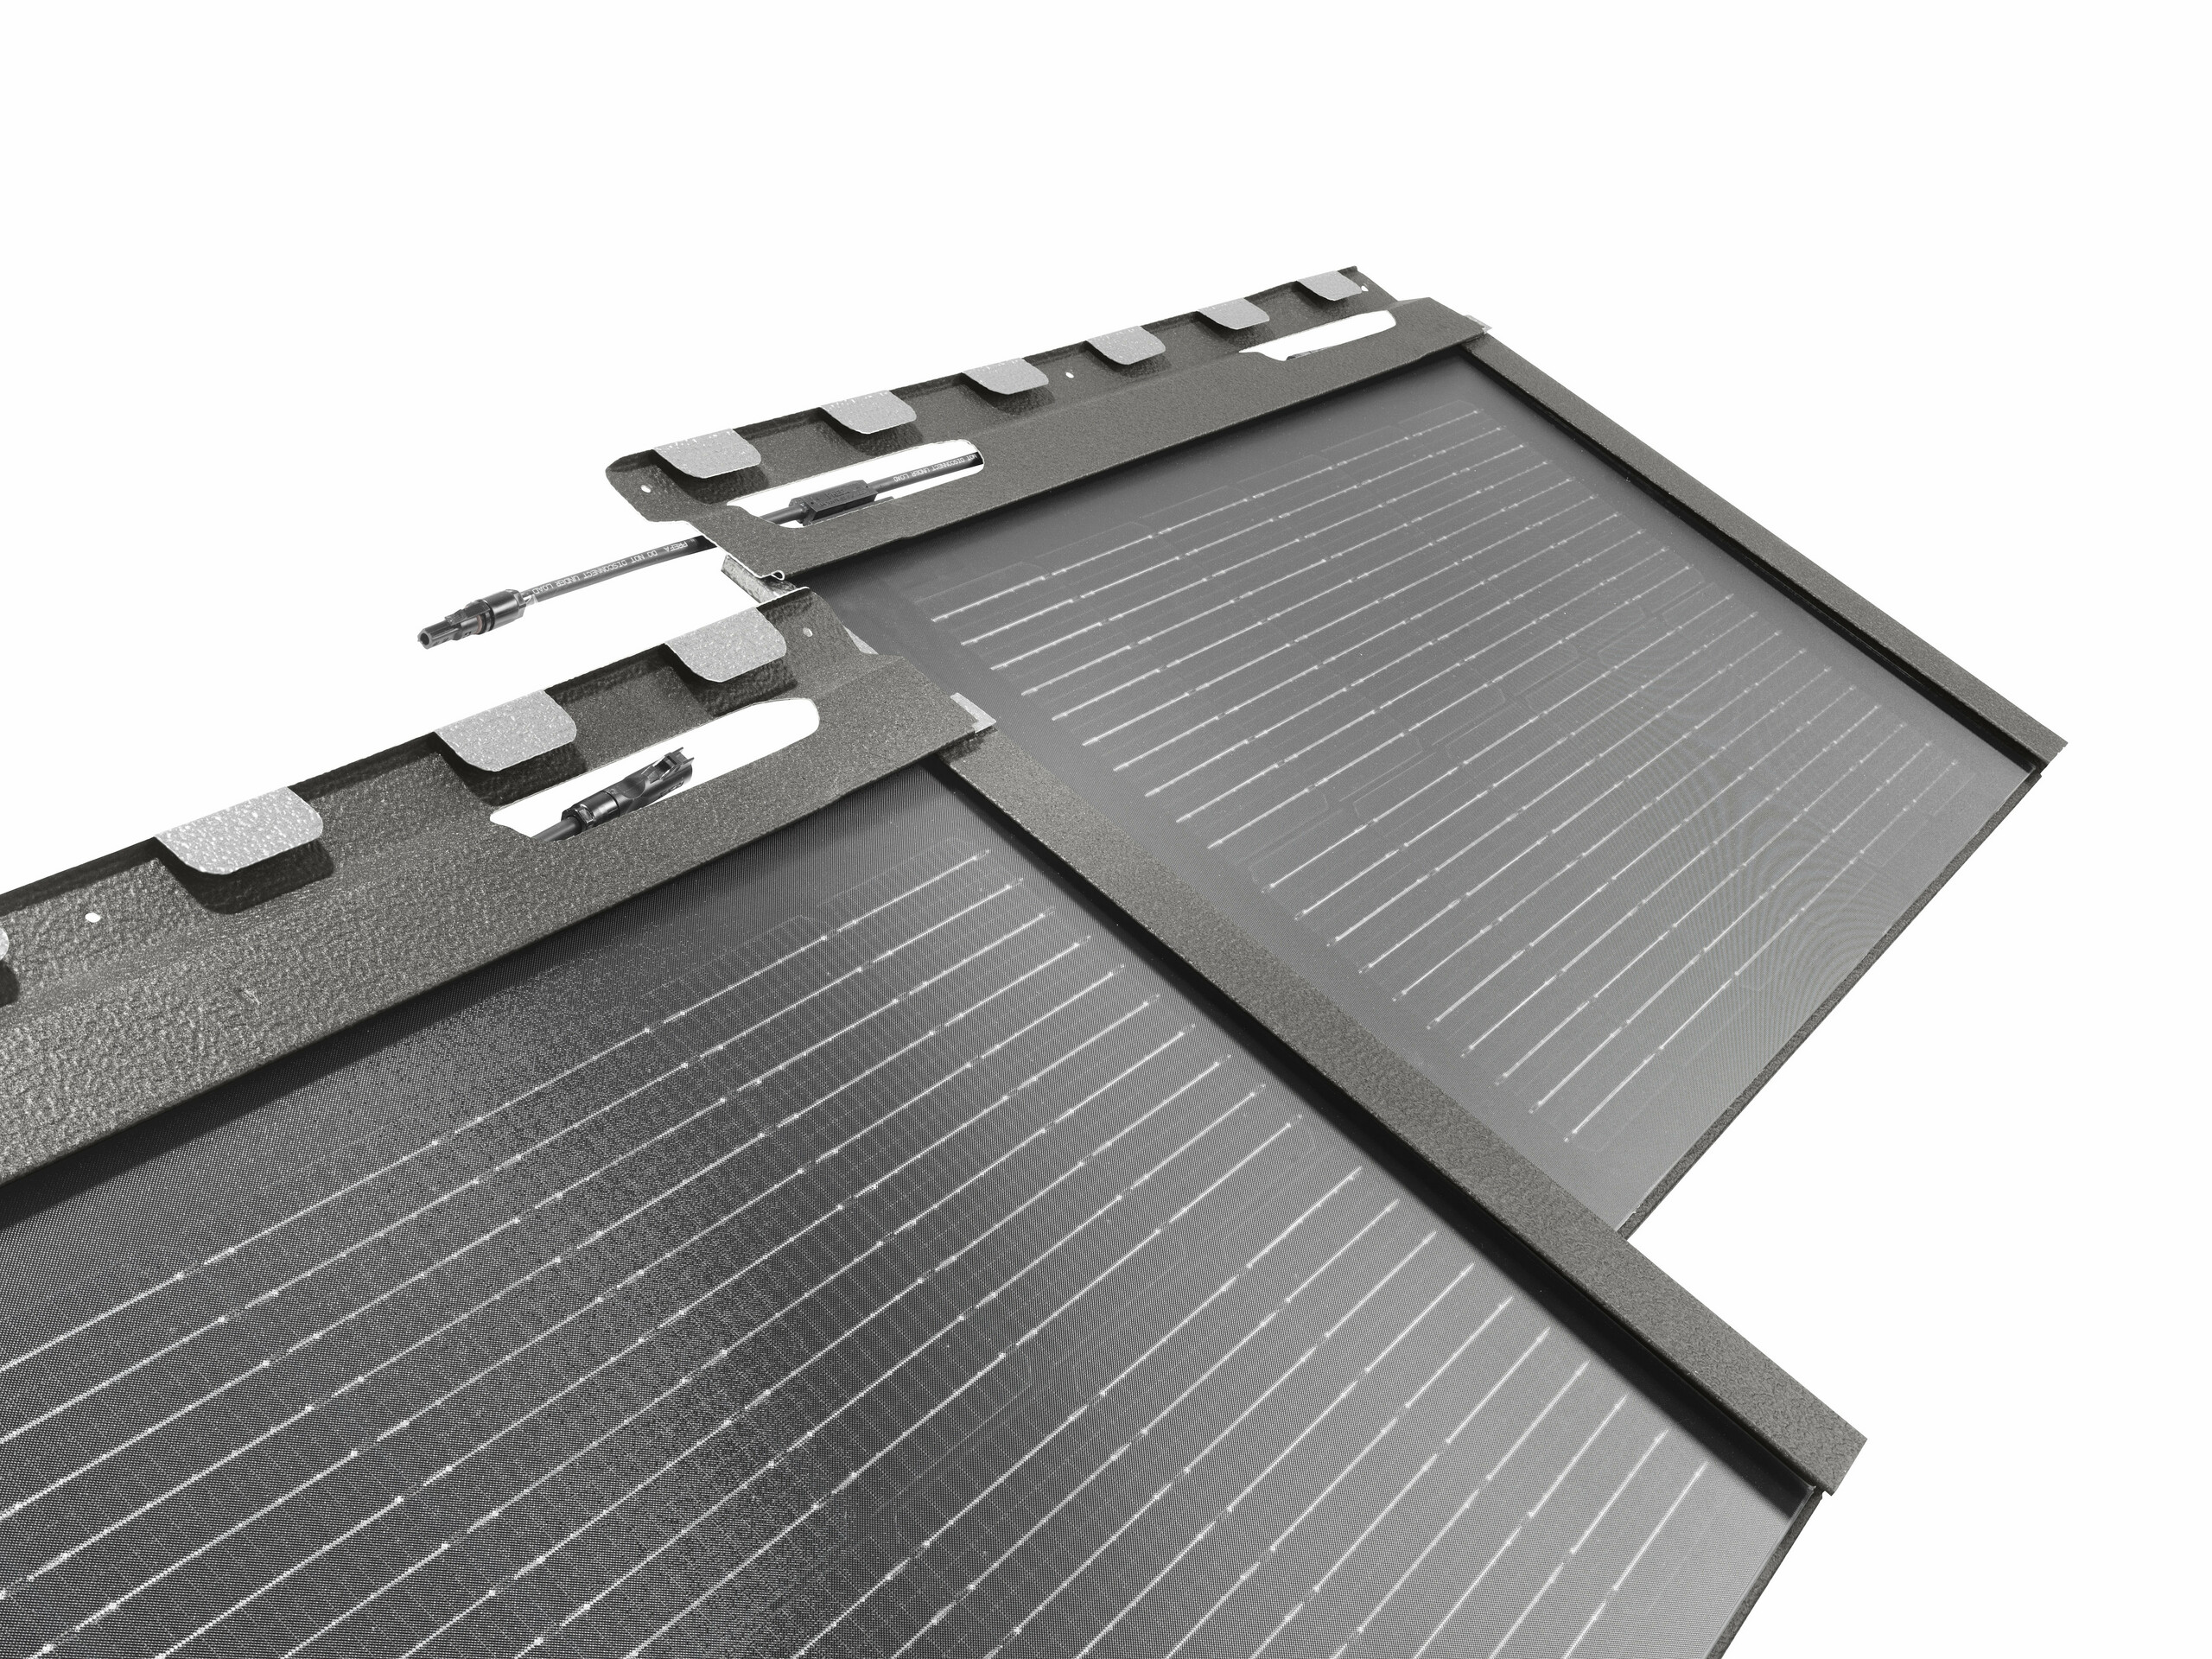 L' immagine mostra la tecnica di connessione delle tegole fotovoltaiche PREFA